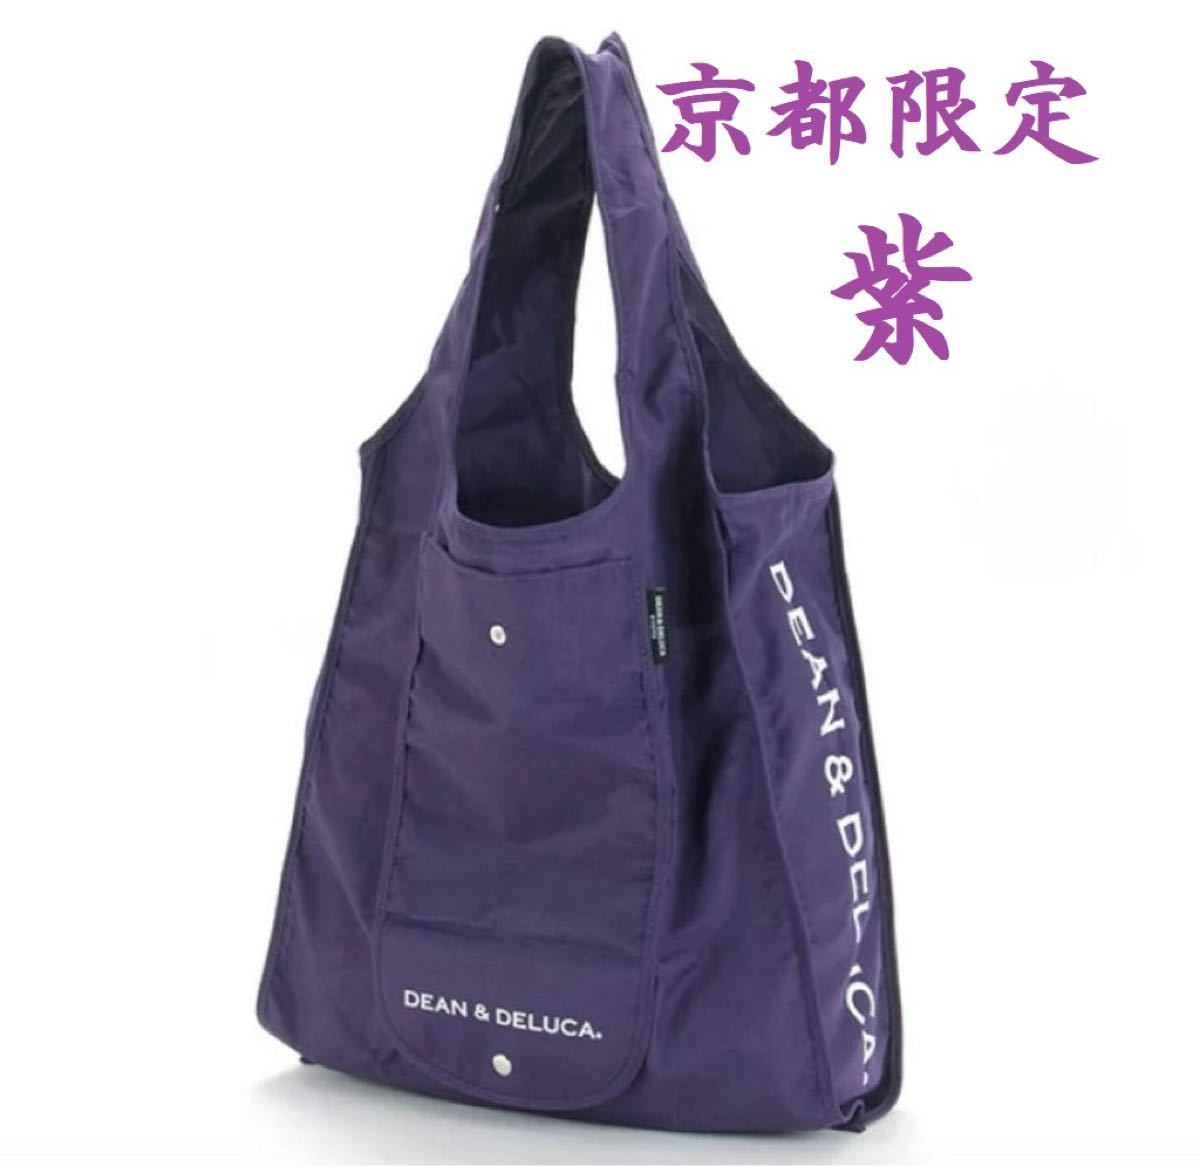 DEAN&DELUCA エコバッグ 京都限定カラー紫&ミニマムエコバッグ